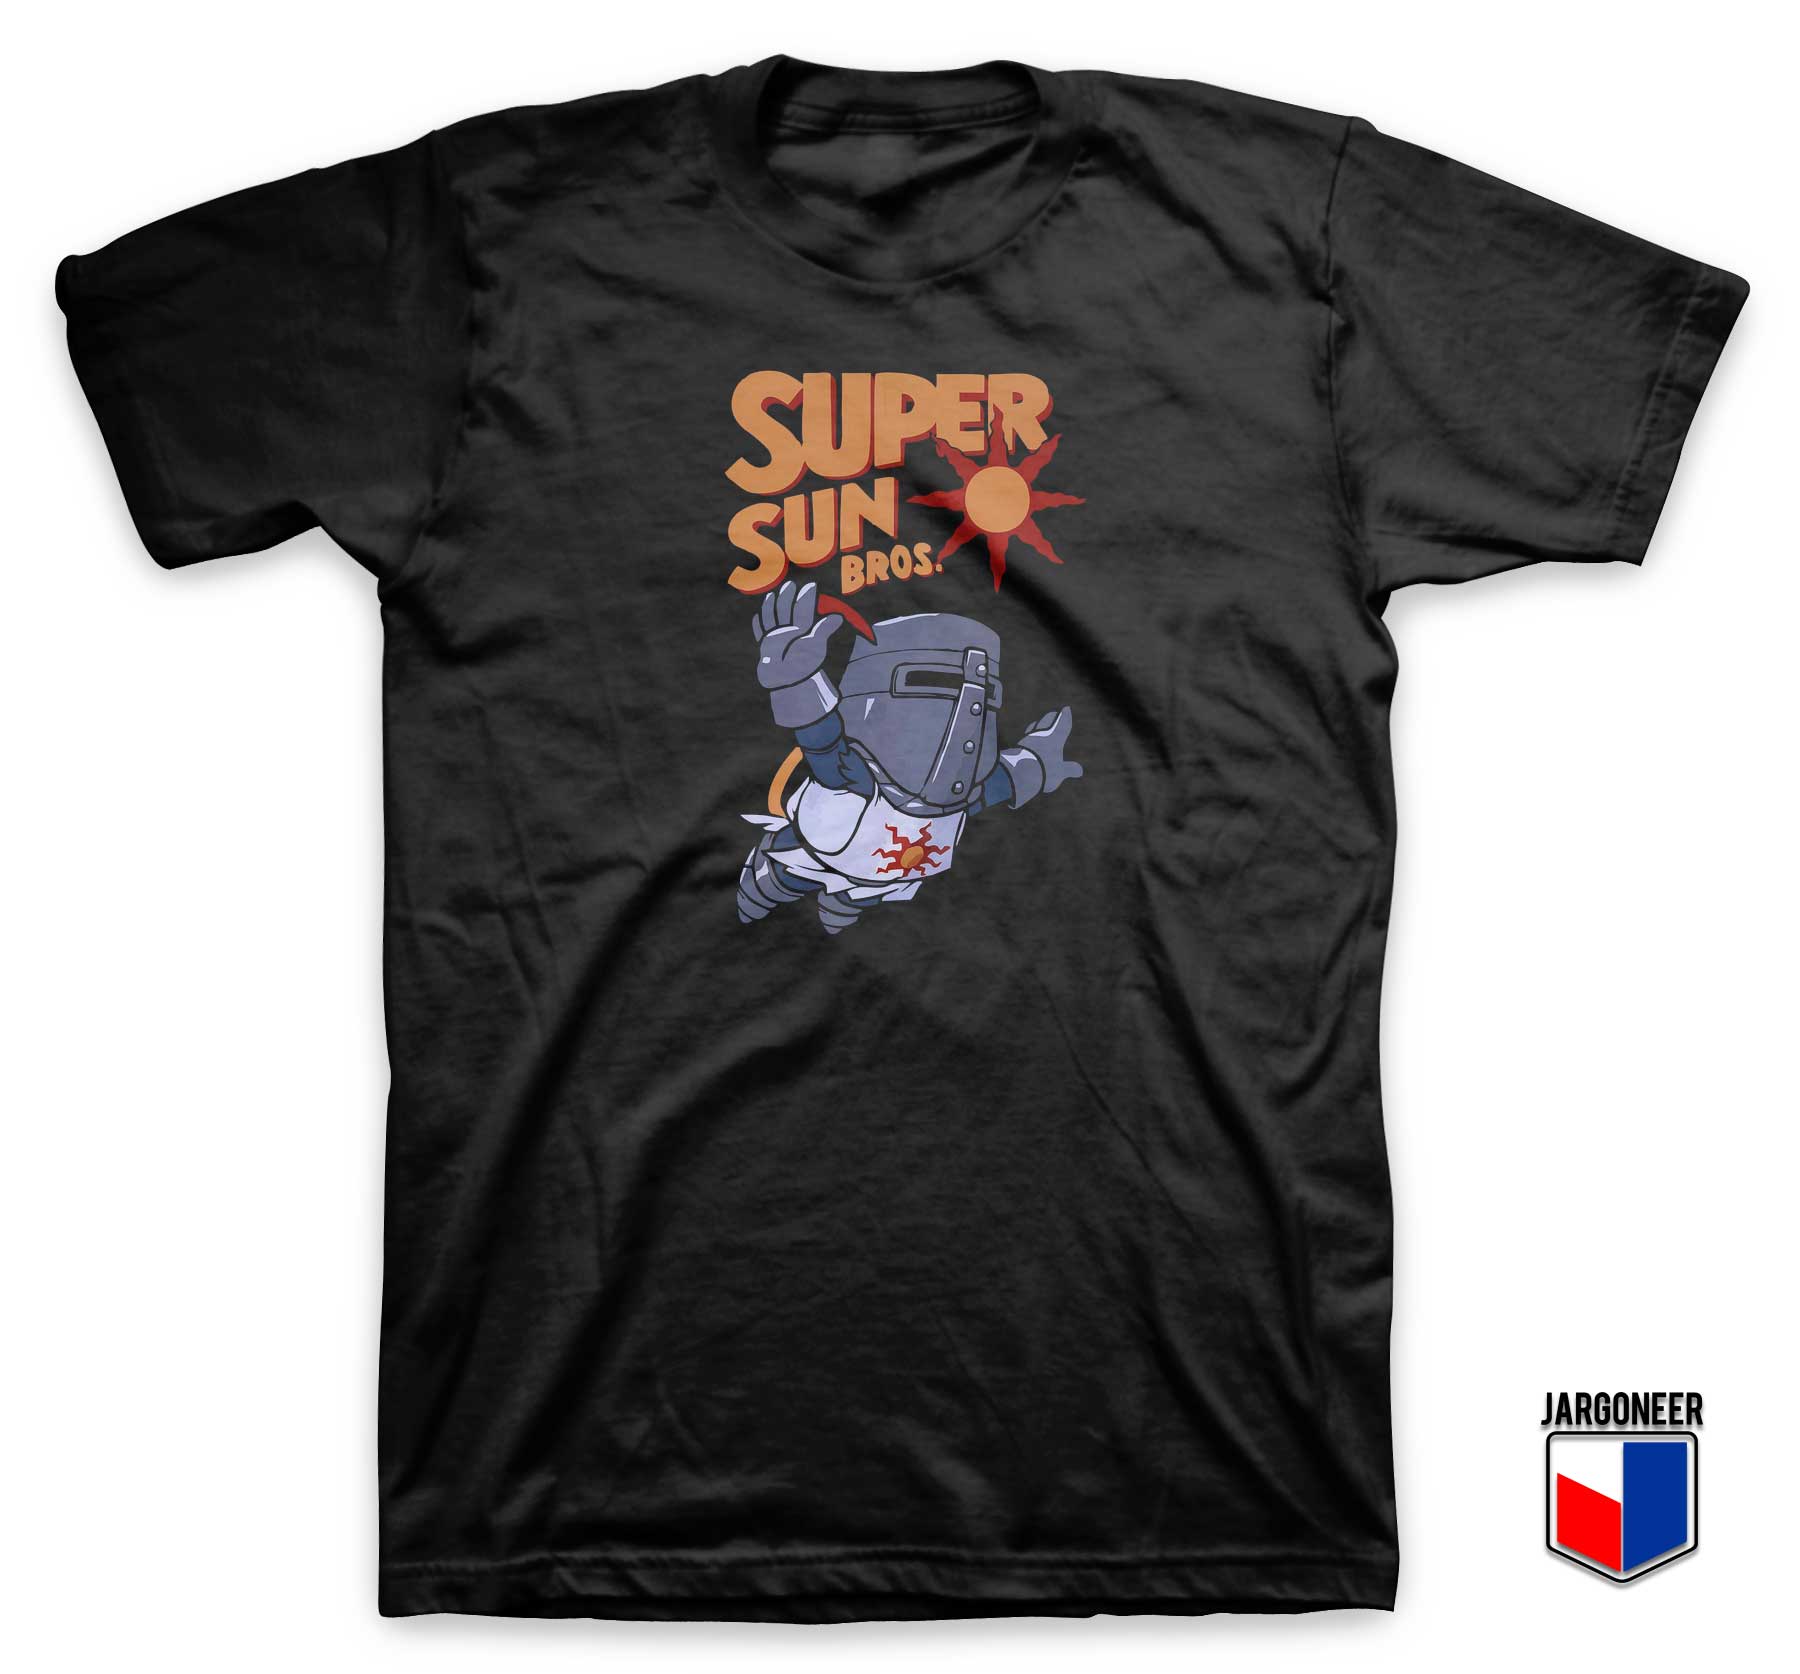 Super Sun Bros T Shirt - Shop Unique Graphic Cool Shirt Designs